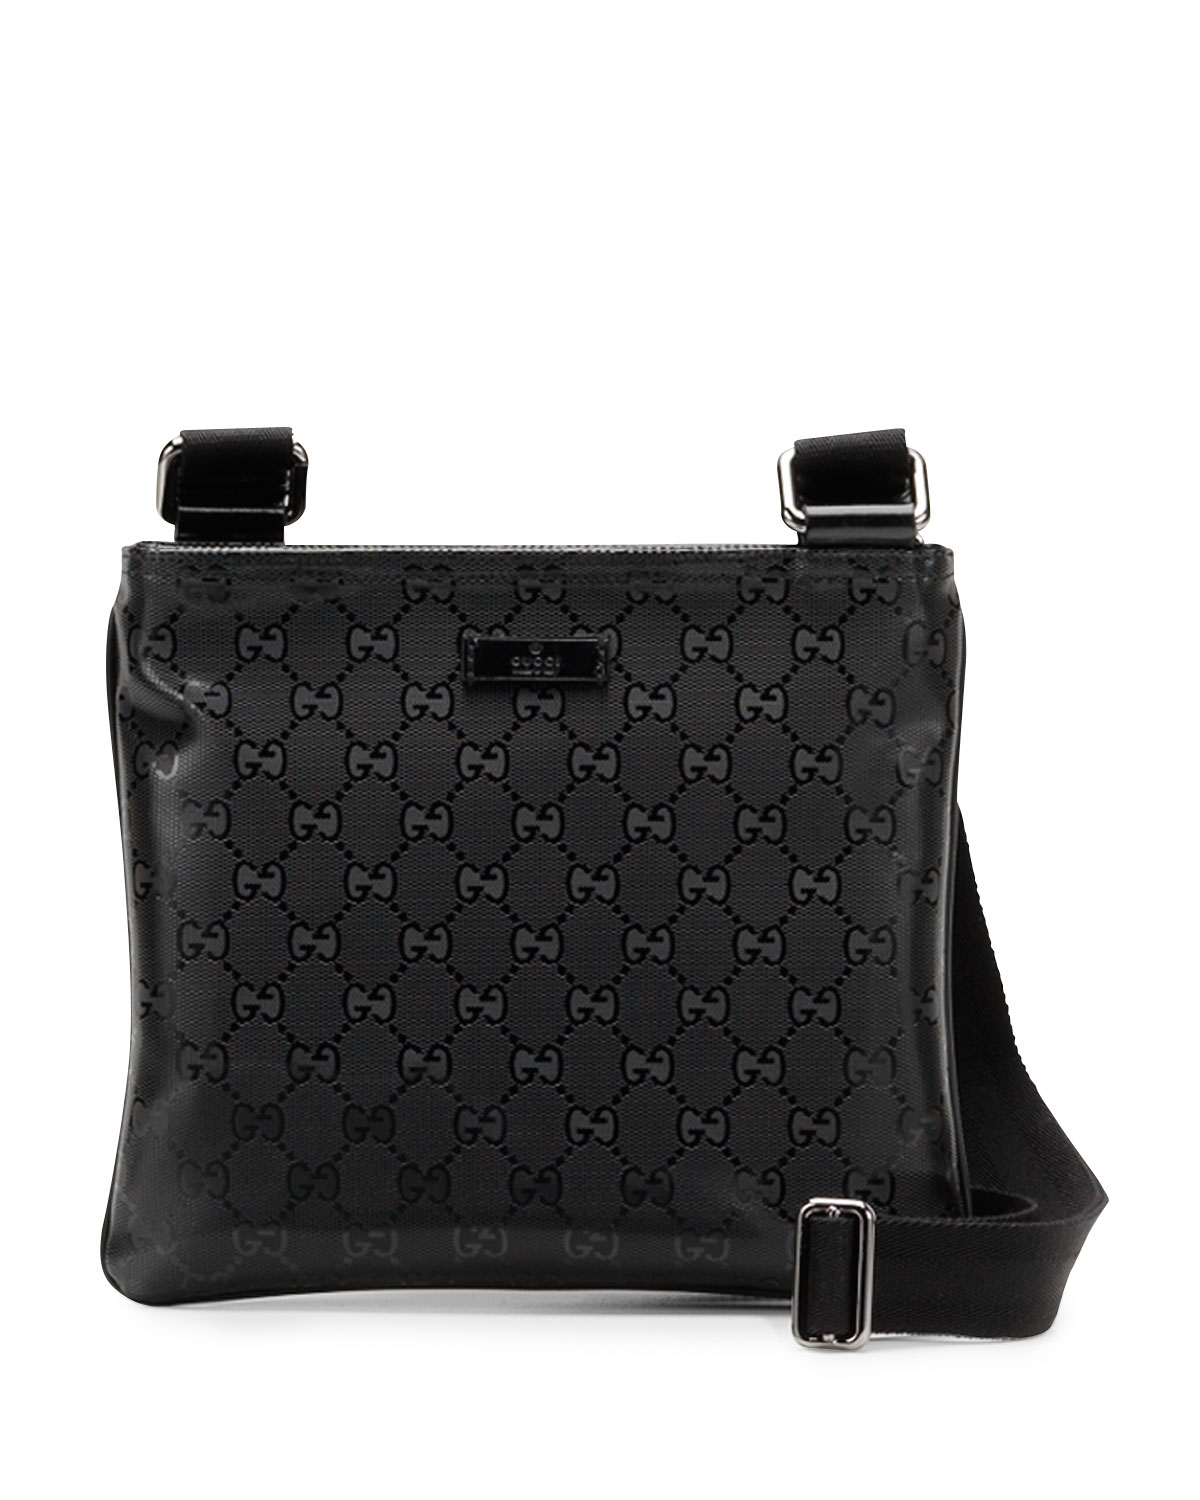 Gucci Gg Imprime Messenger Bag in Black - Lyst